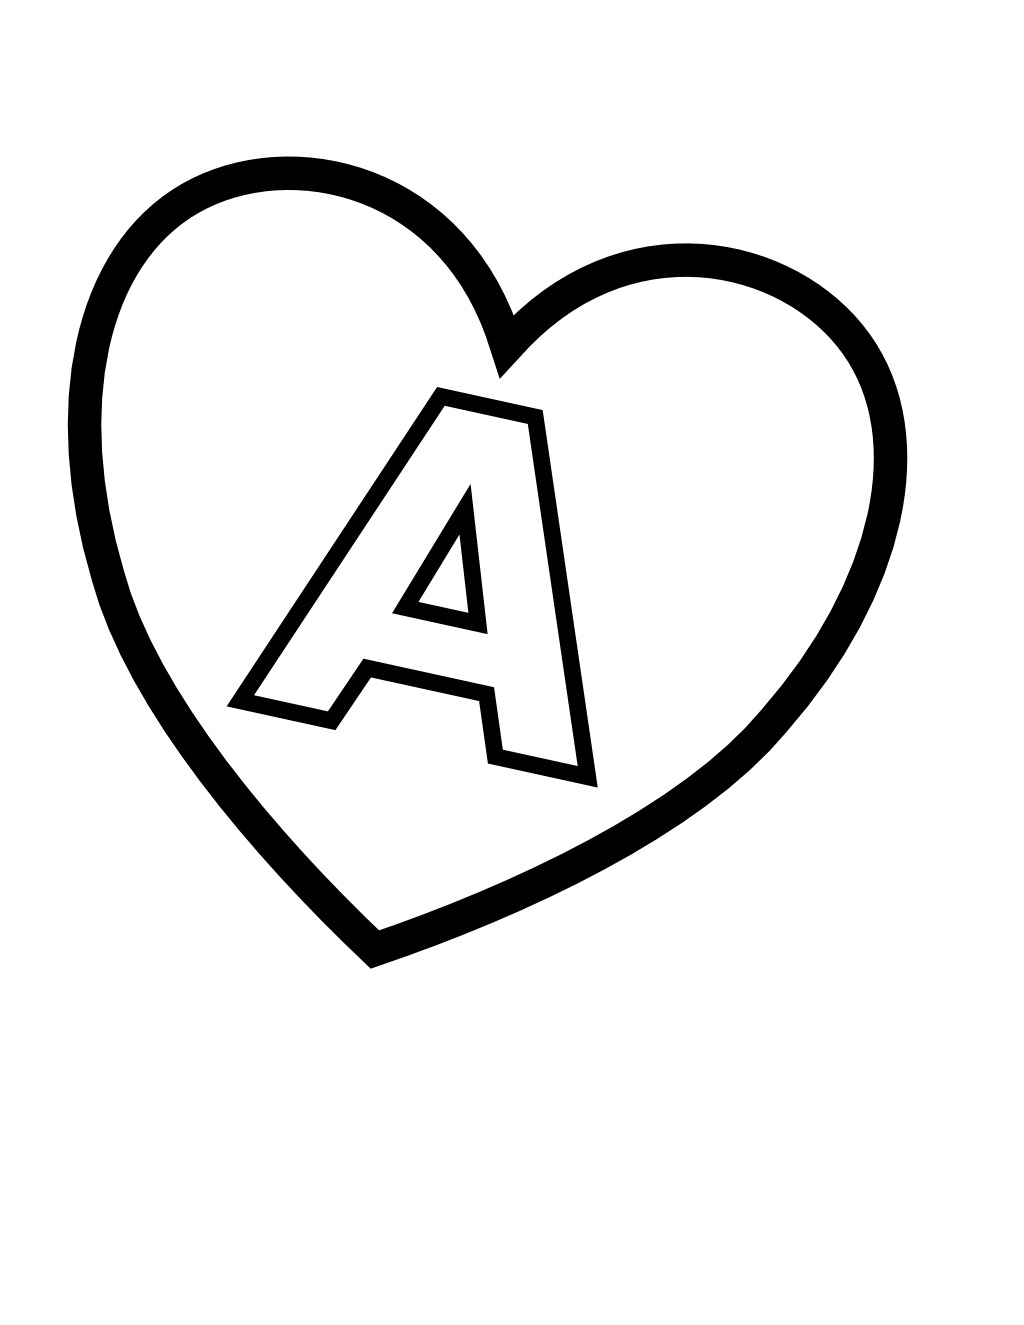 La lettre A dans un coeur